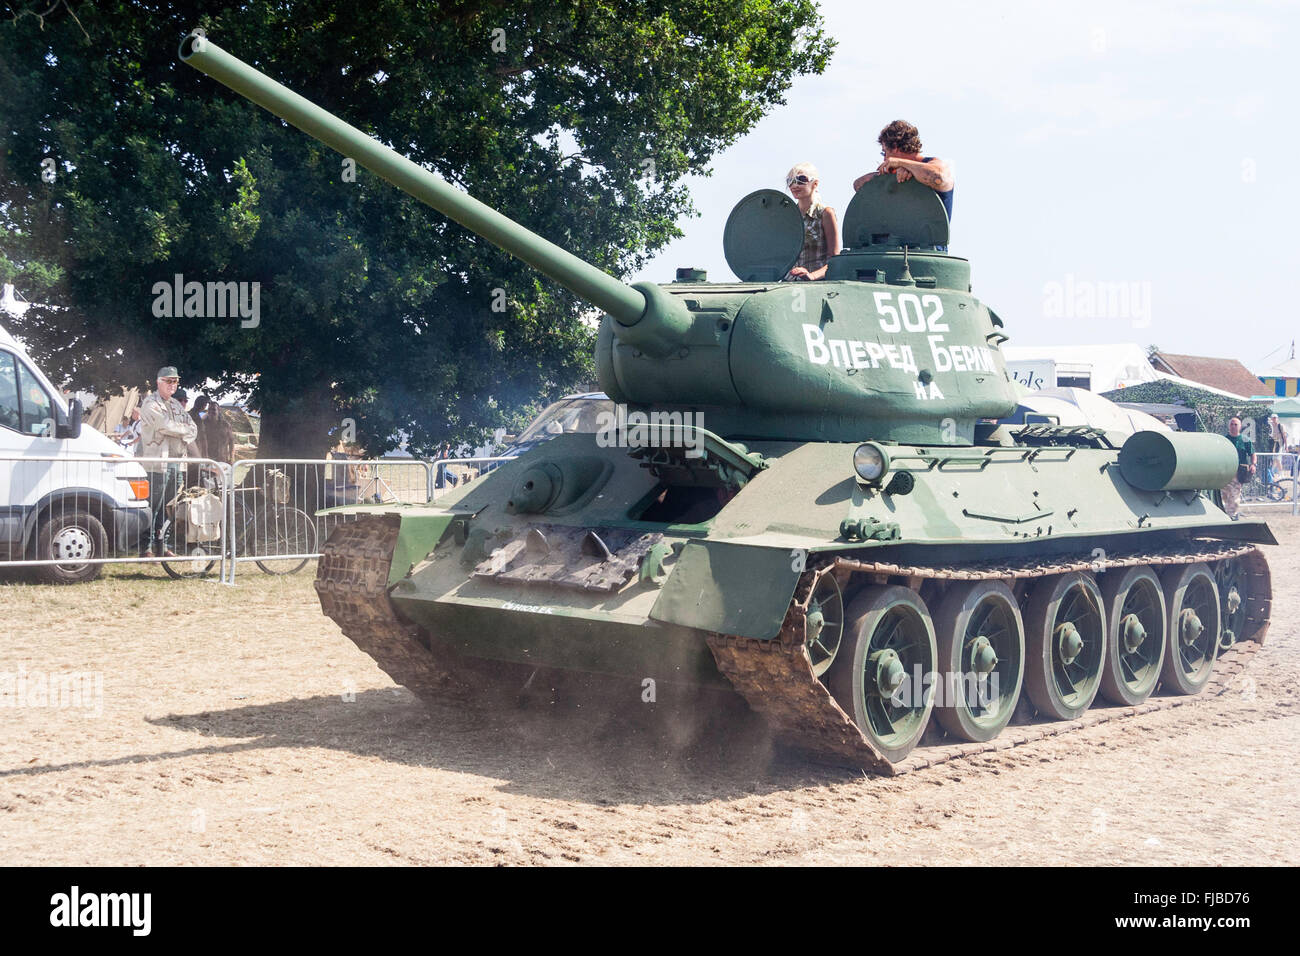 Krieg und Frieden zeigen, England. Zweiten Weltkrieg russische T-34 Panzer fahren entlang eingezäunt Feldweg und kicking up dust. Mann und Frau im Turm. Stockfoto